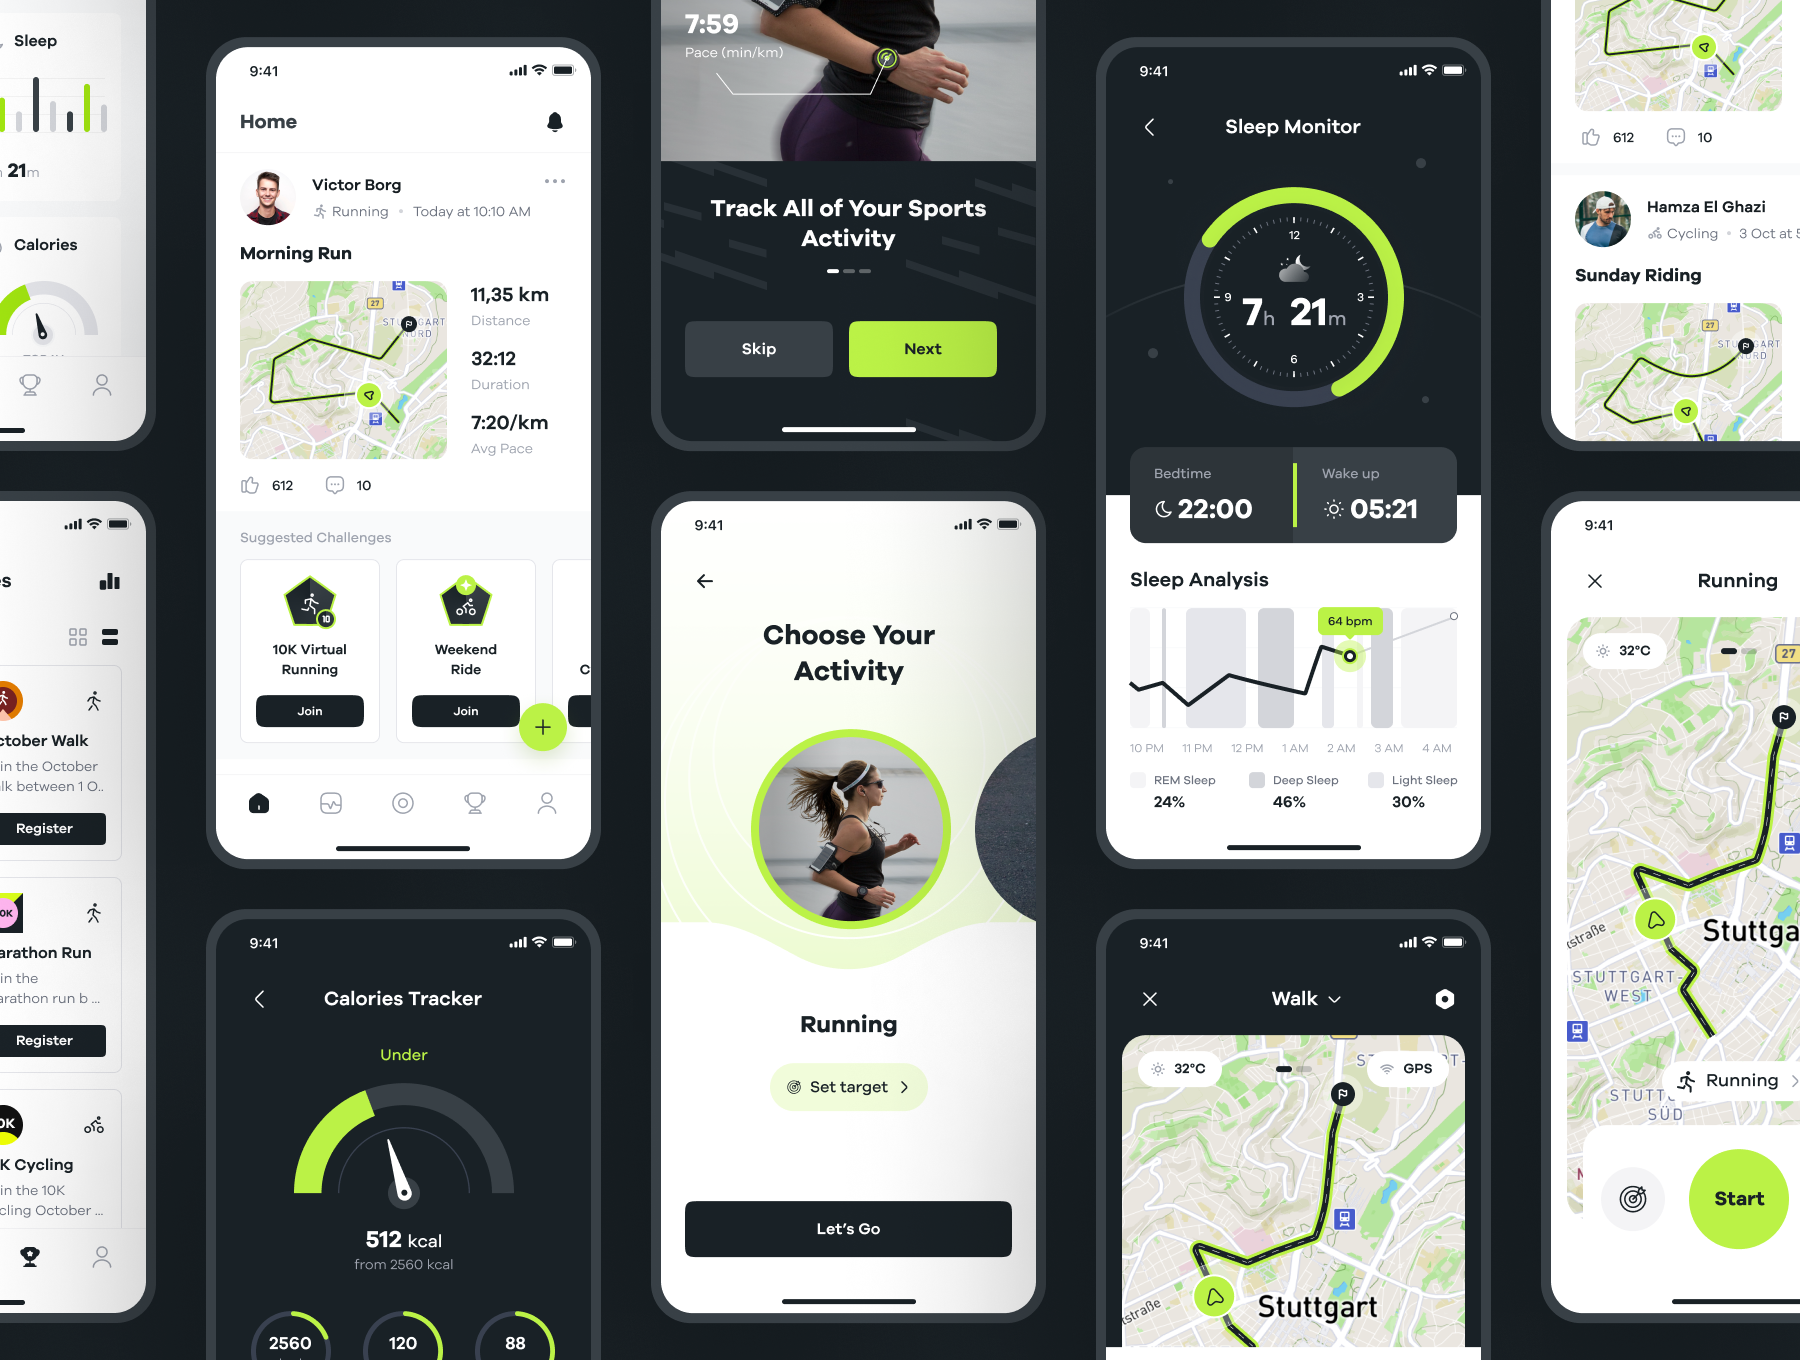 70 70页健身锻炼数据跟踪响应式手机网页界面设计UI套件模板 Sportly – Fittech App UI Kit 70